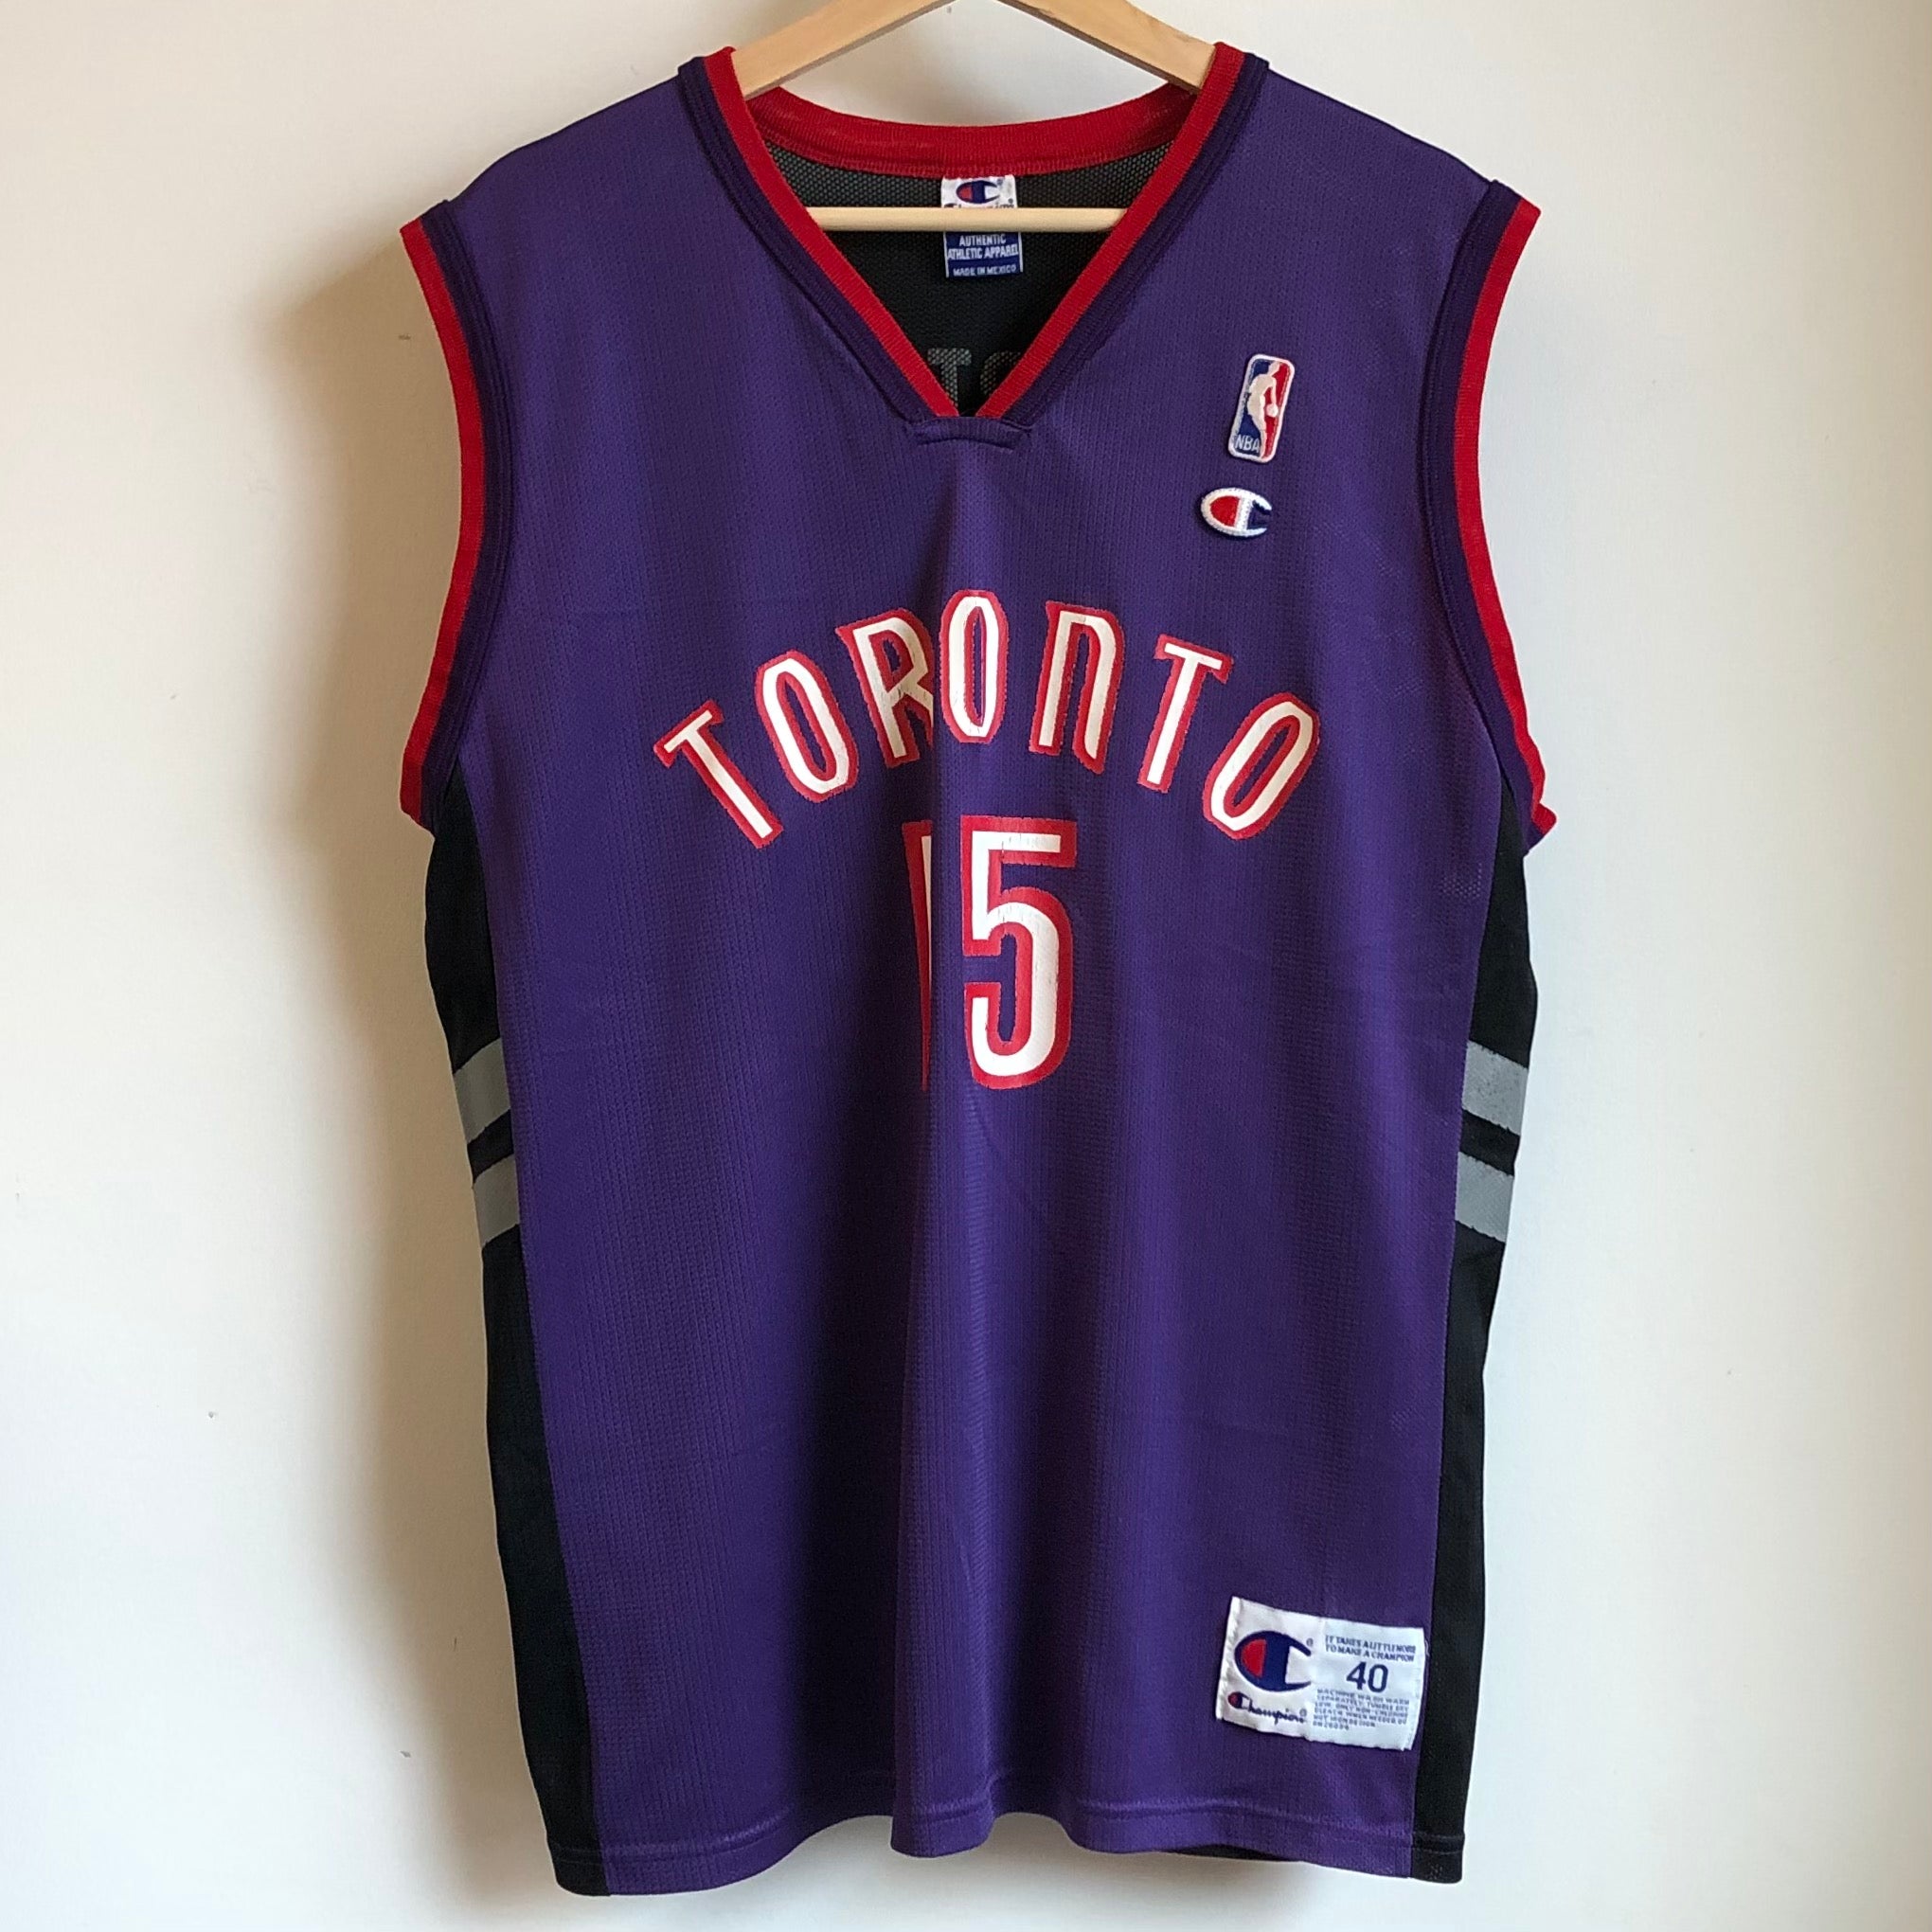 Vintage Champion Vince Carter Toronto Raptors Basketball Jersey